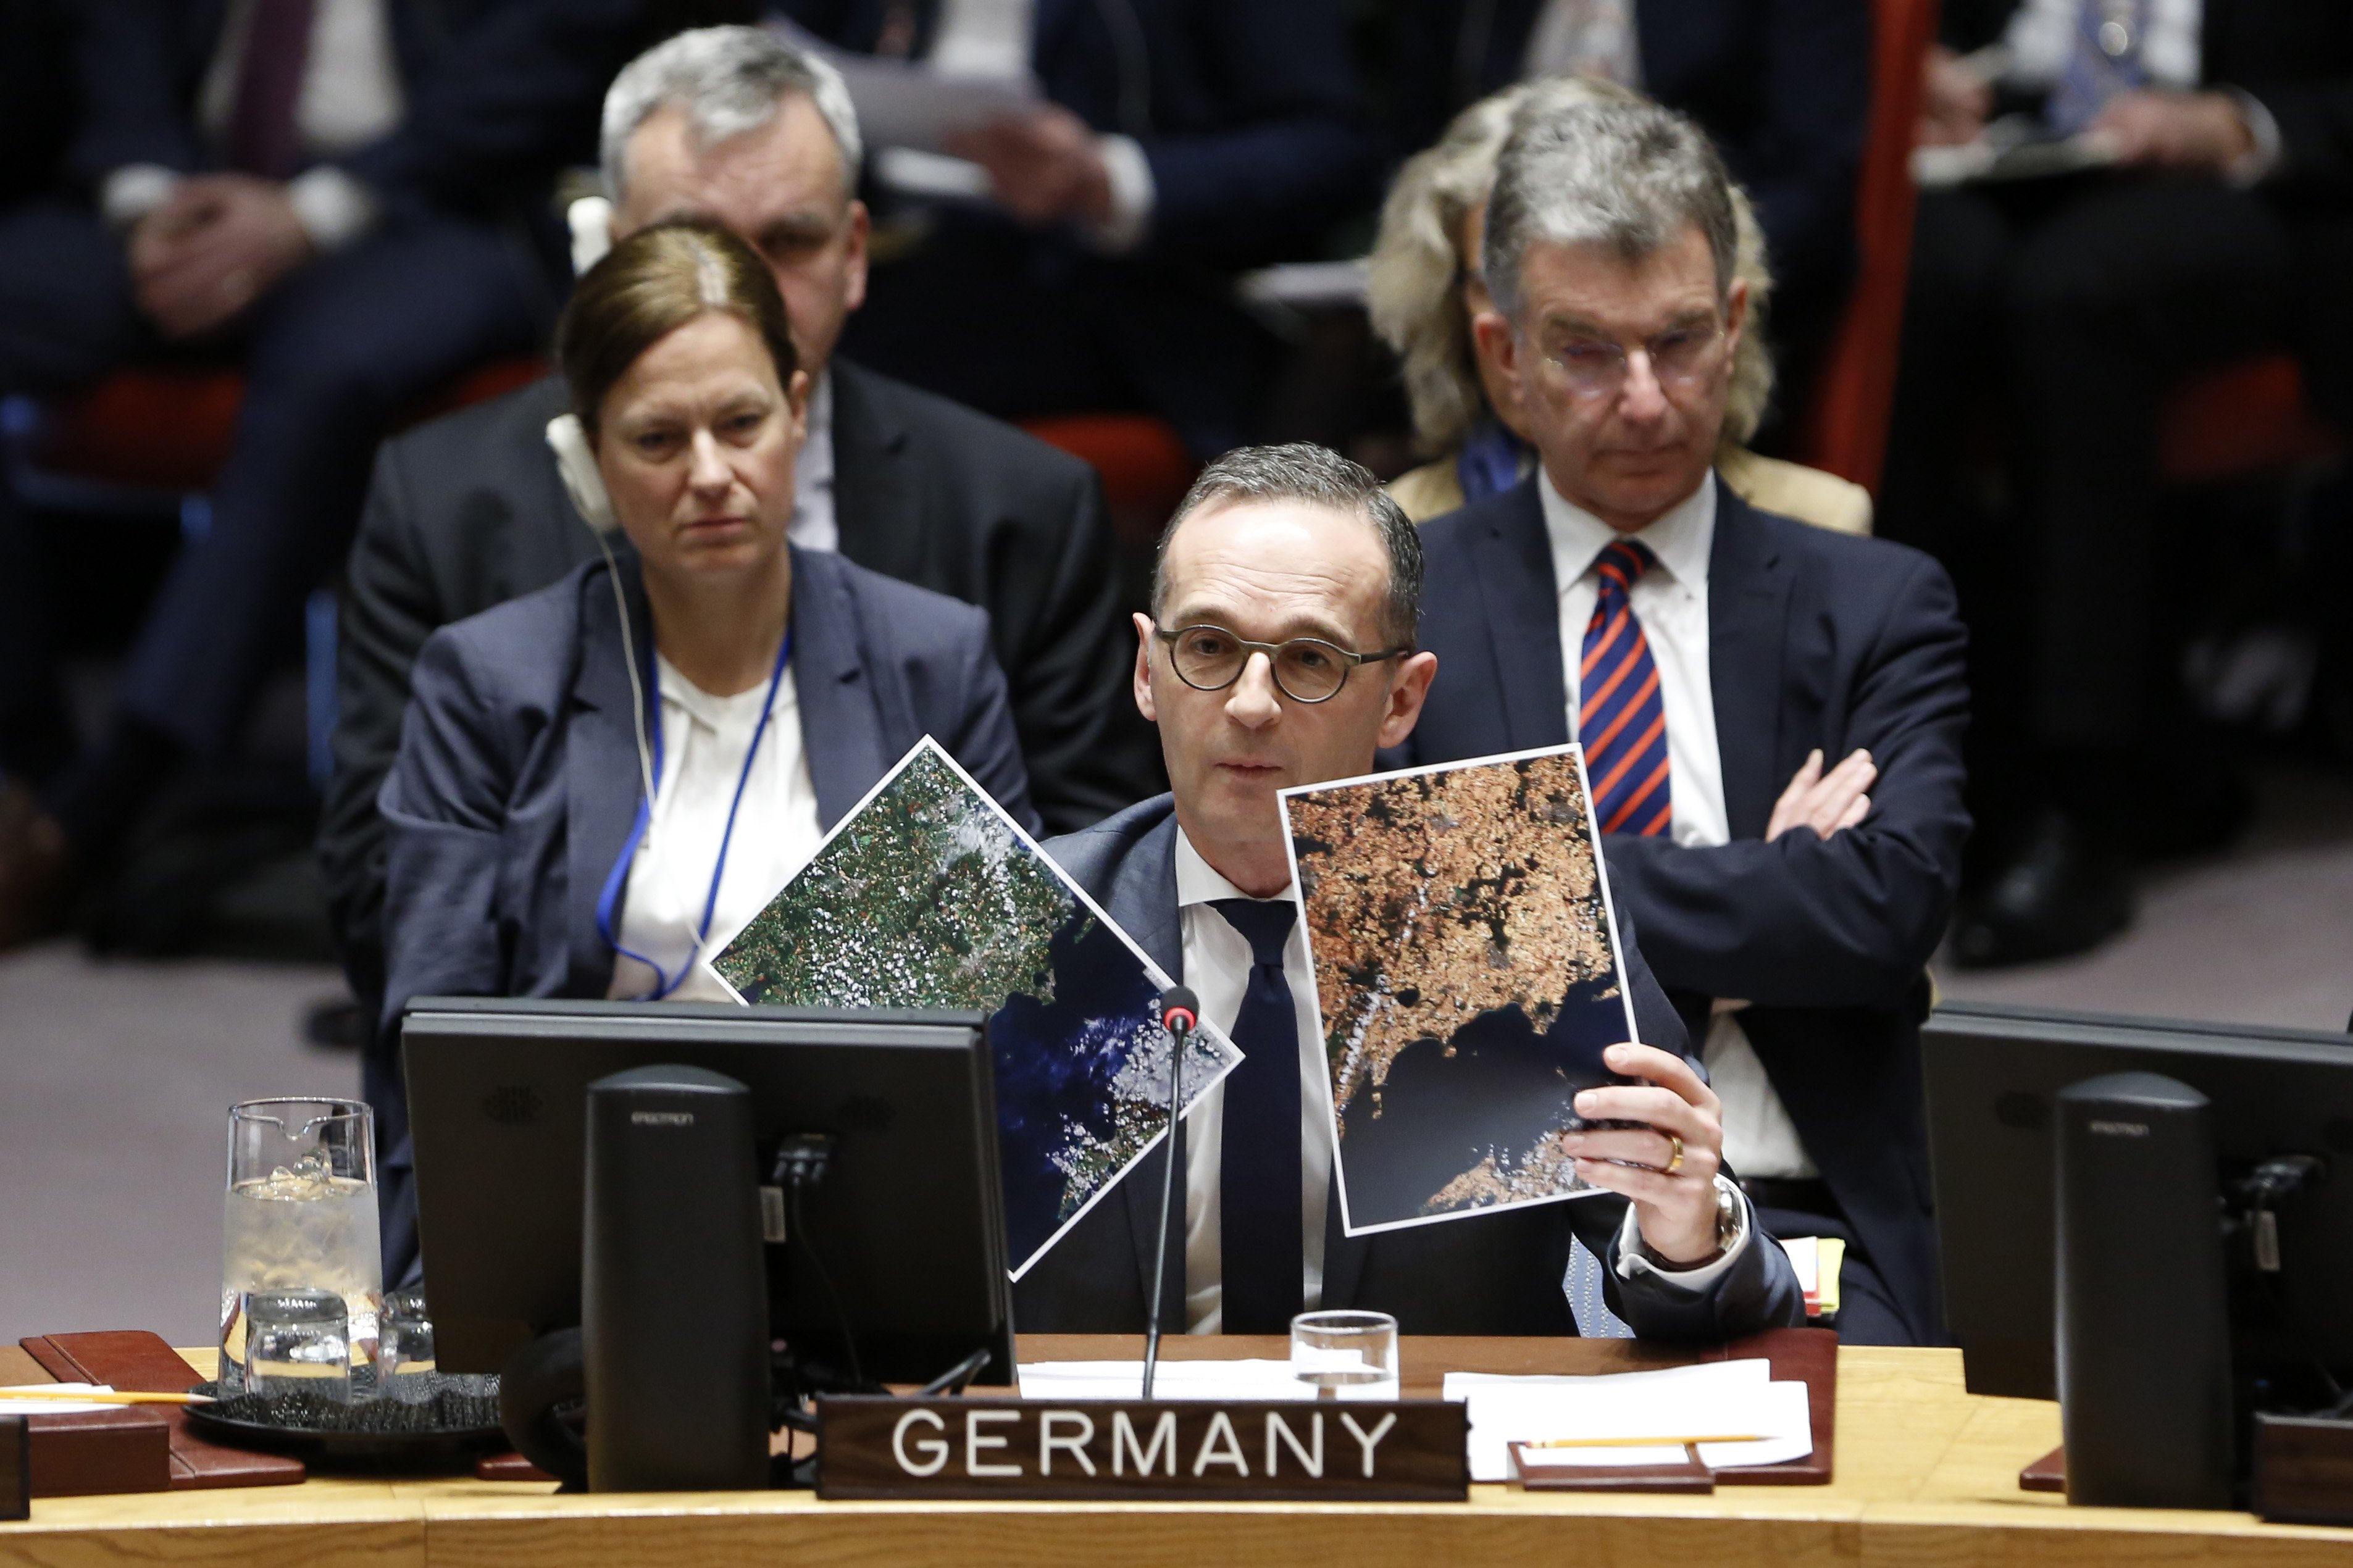 Onu - seggio - Germania - Consiglio di Sicurezza - quick fix